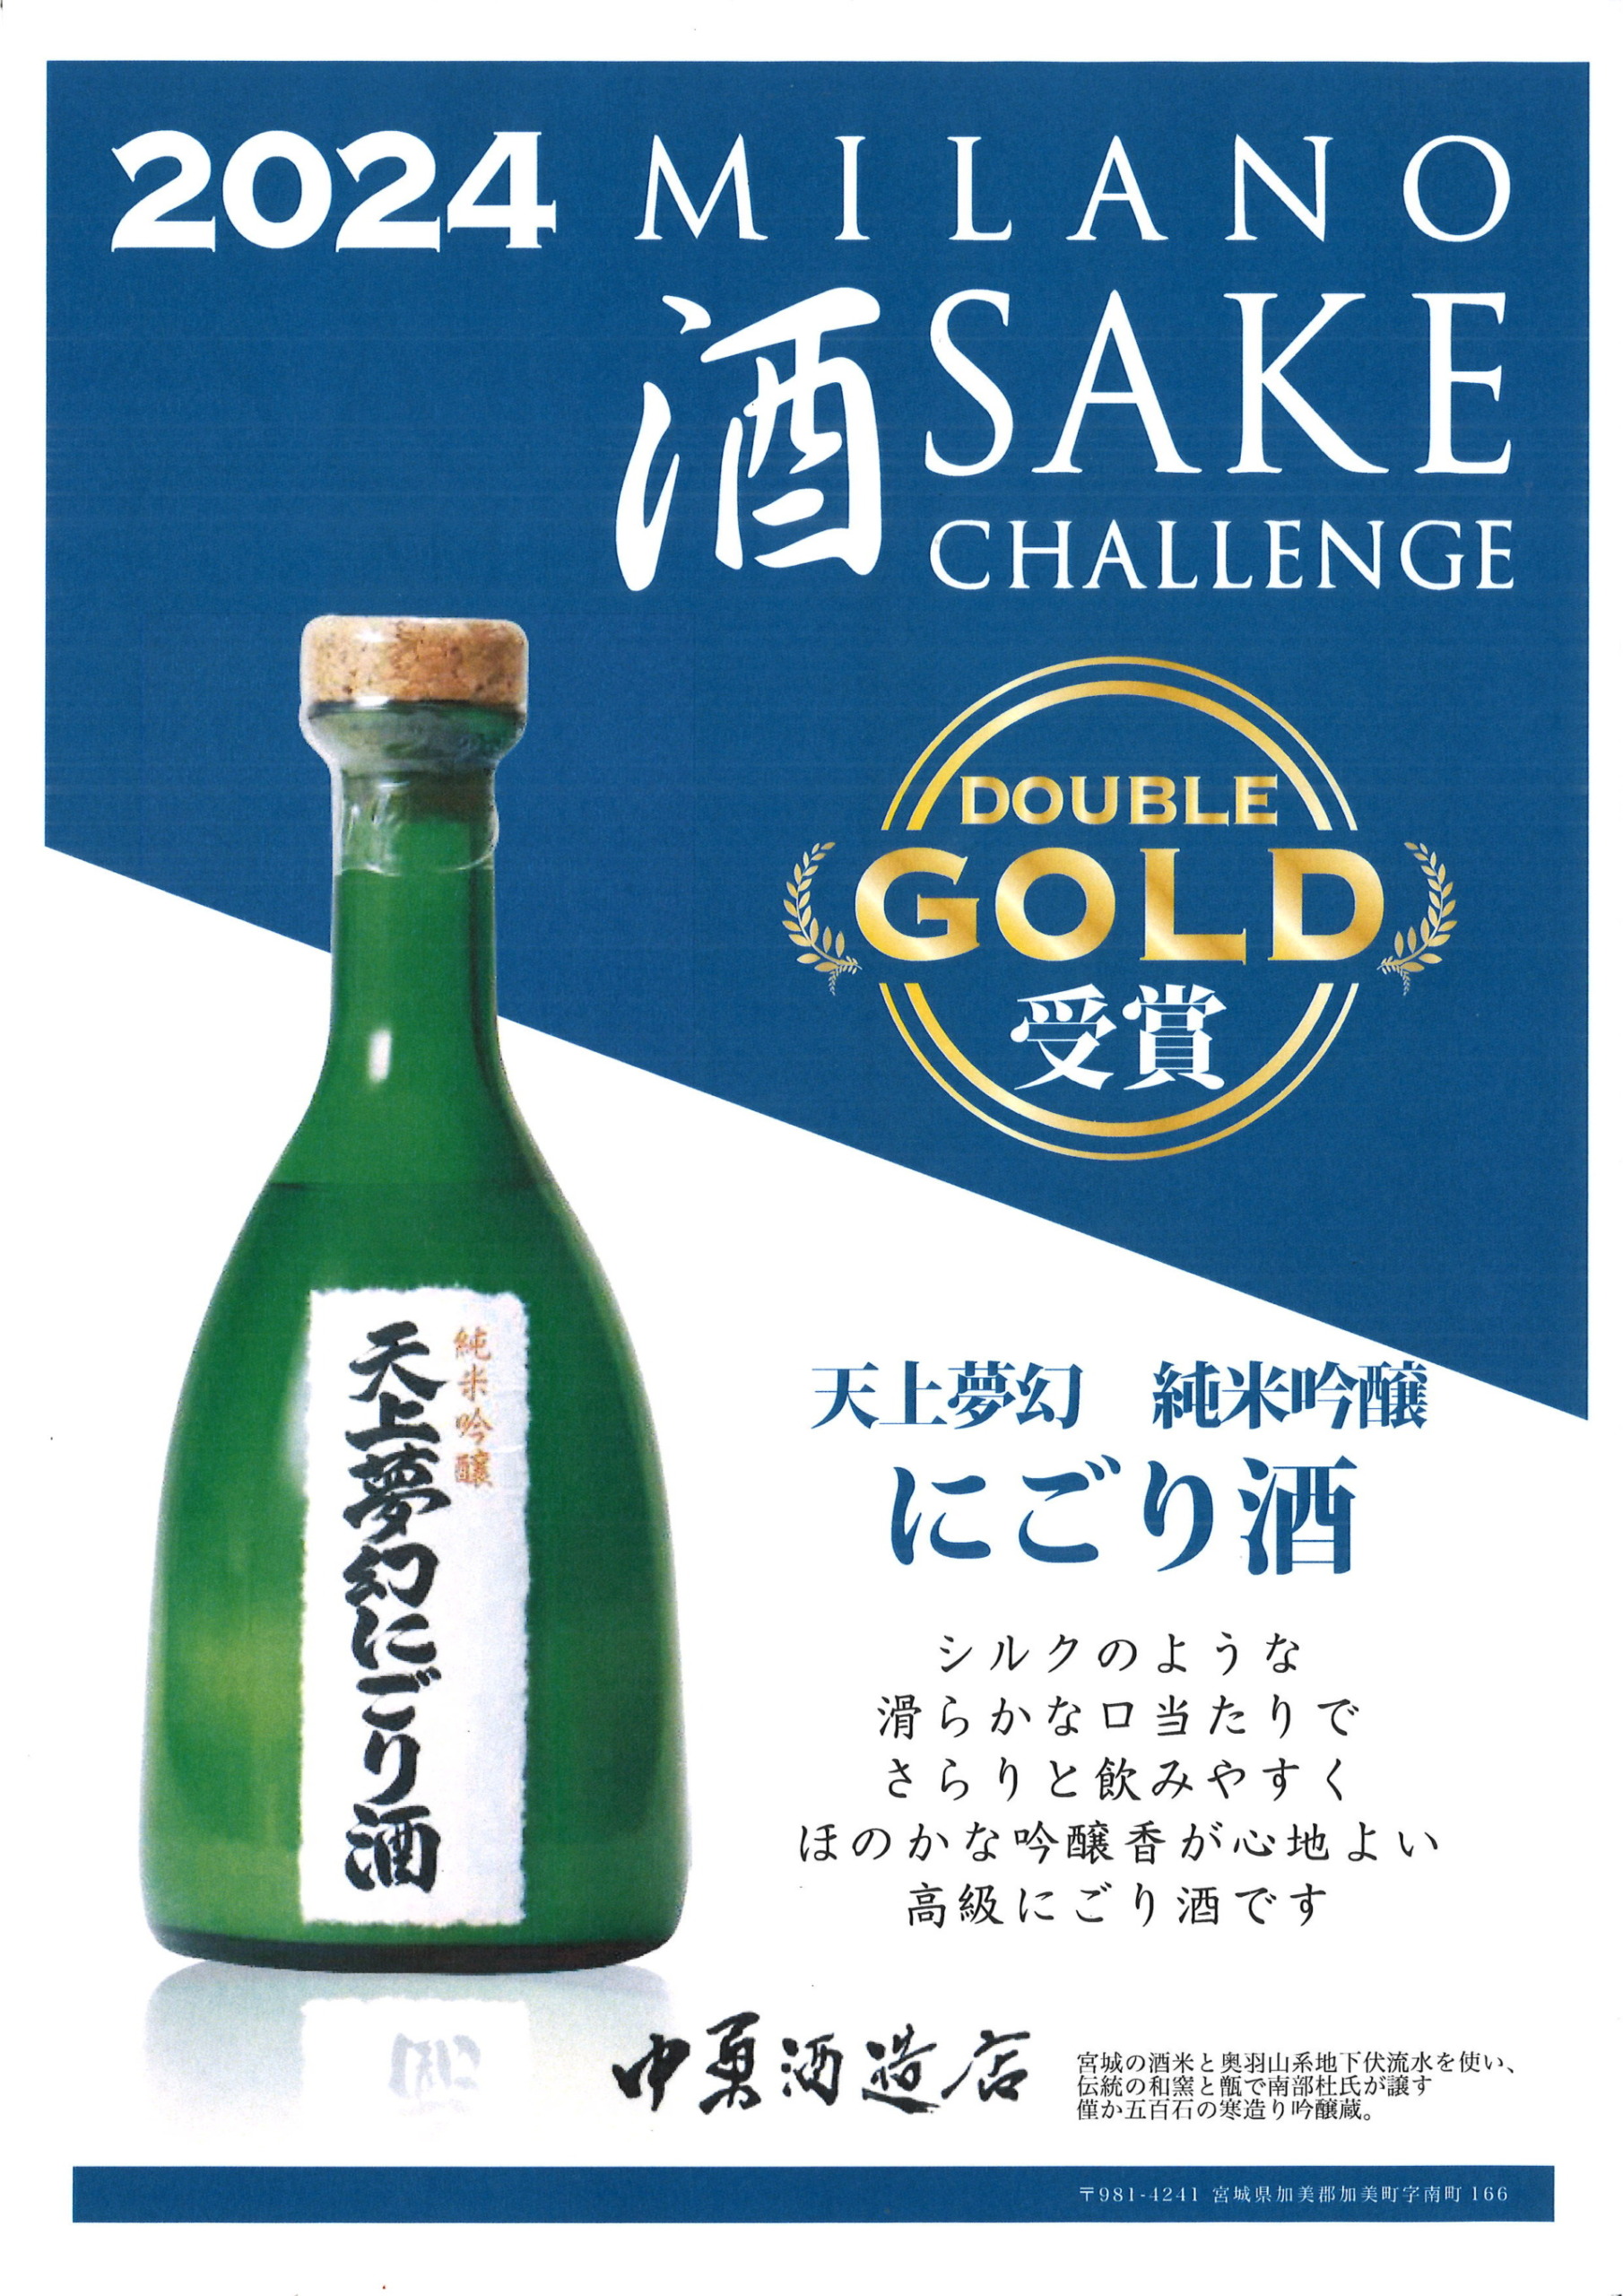 「ミラノ酒チャレンジ2024」にてダブルゴールド賞を受賞しました。